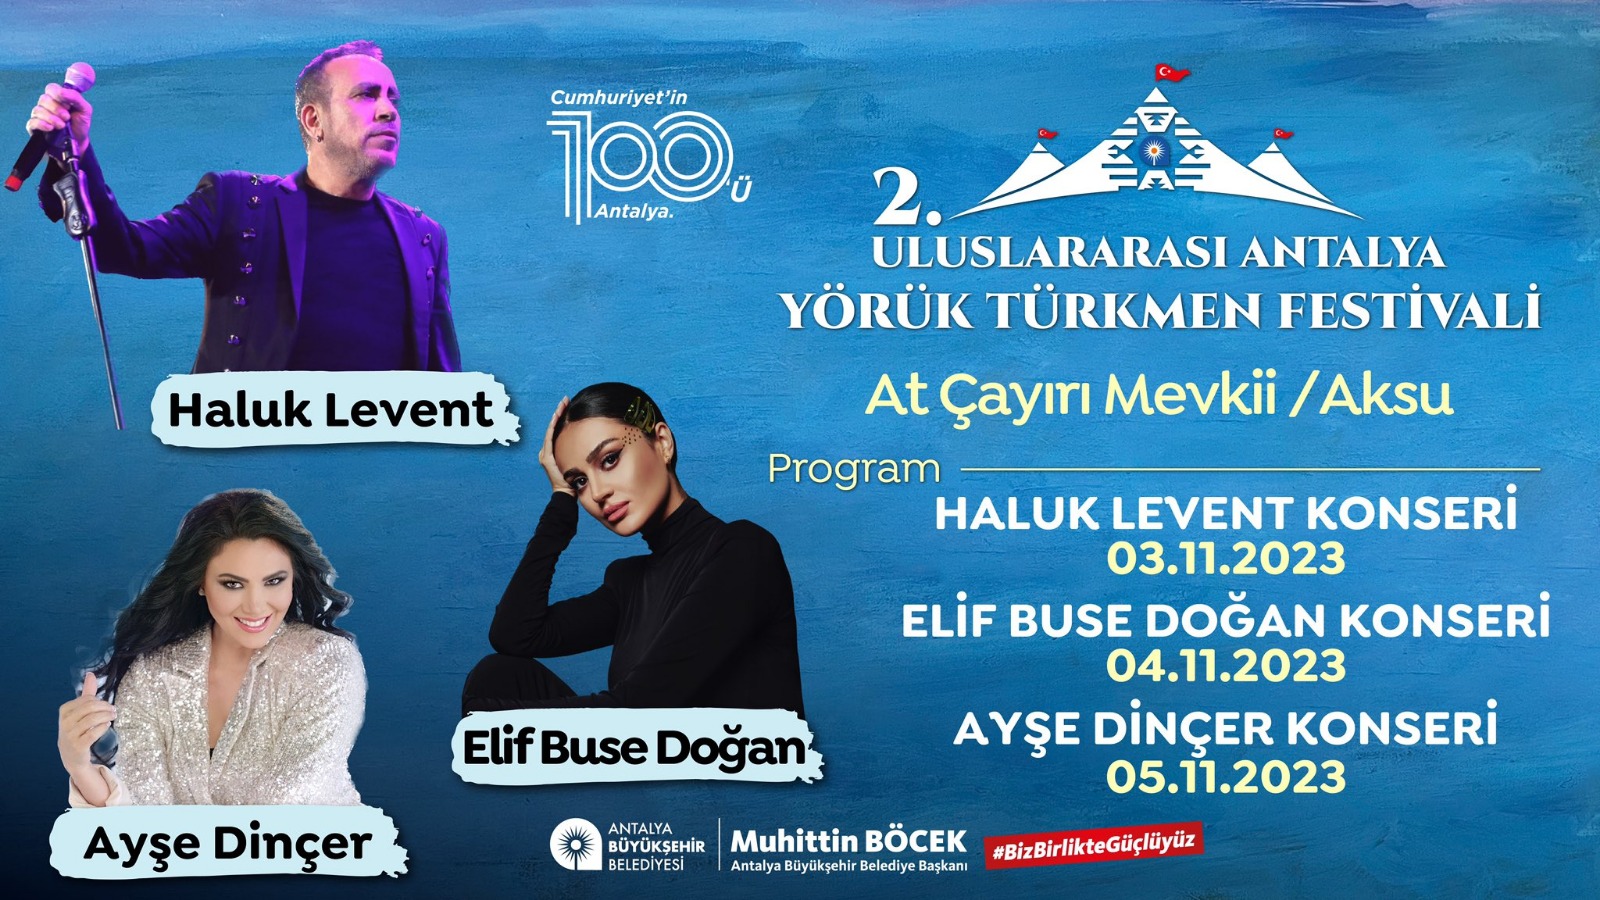 uluslararasi-antalya-yoruk-turkmen-festivali-556